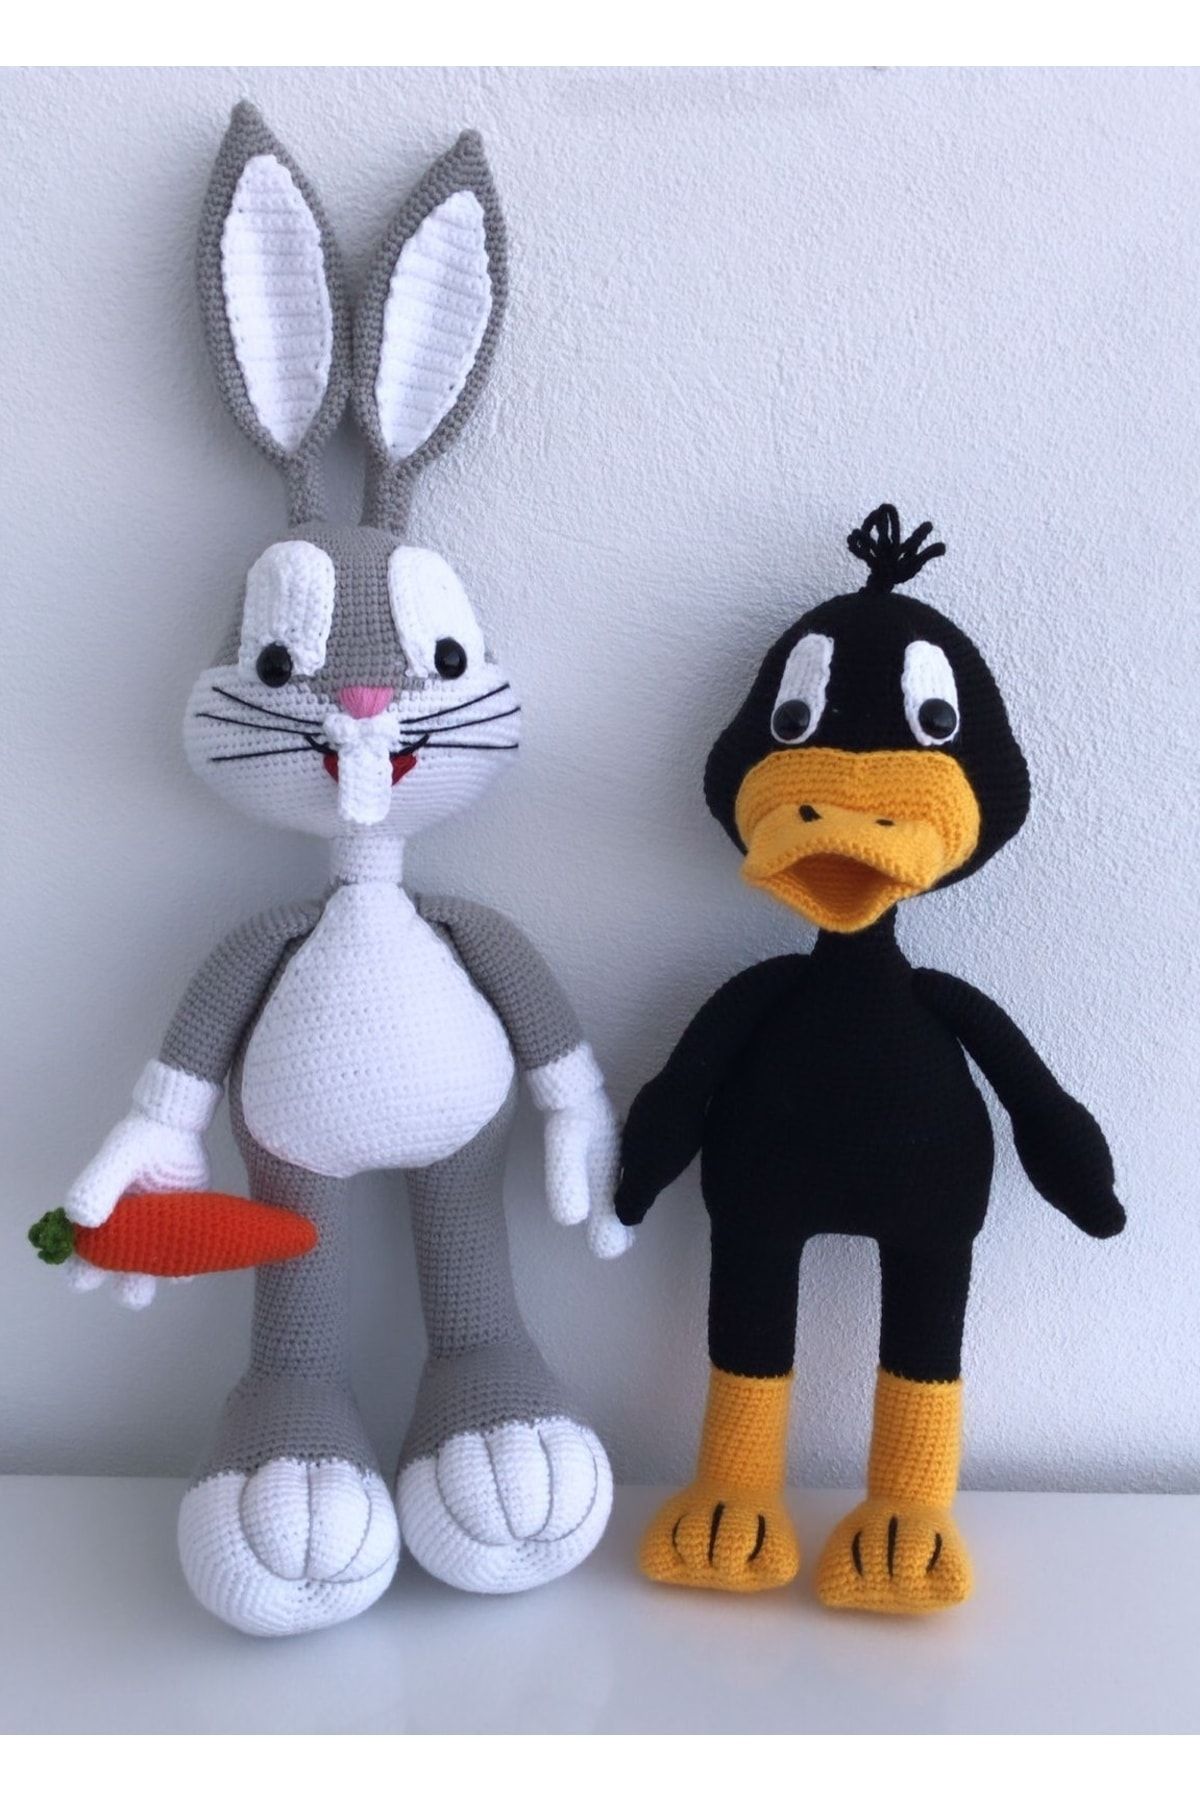 OYUNCAKPARK Daffy Duck Ve Bugs Bunny Amigurumi Organik Oyuncak